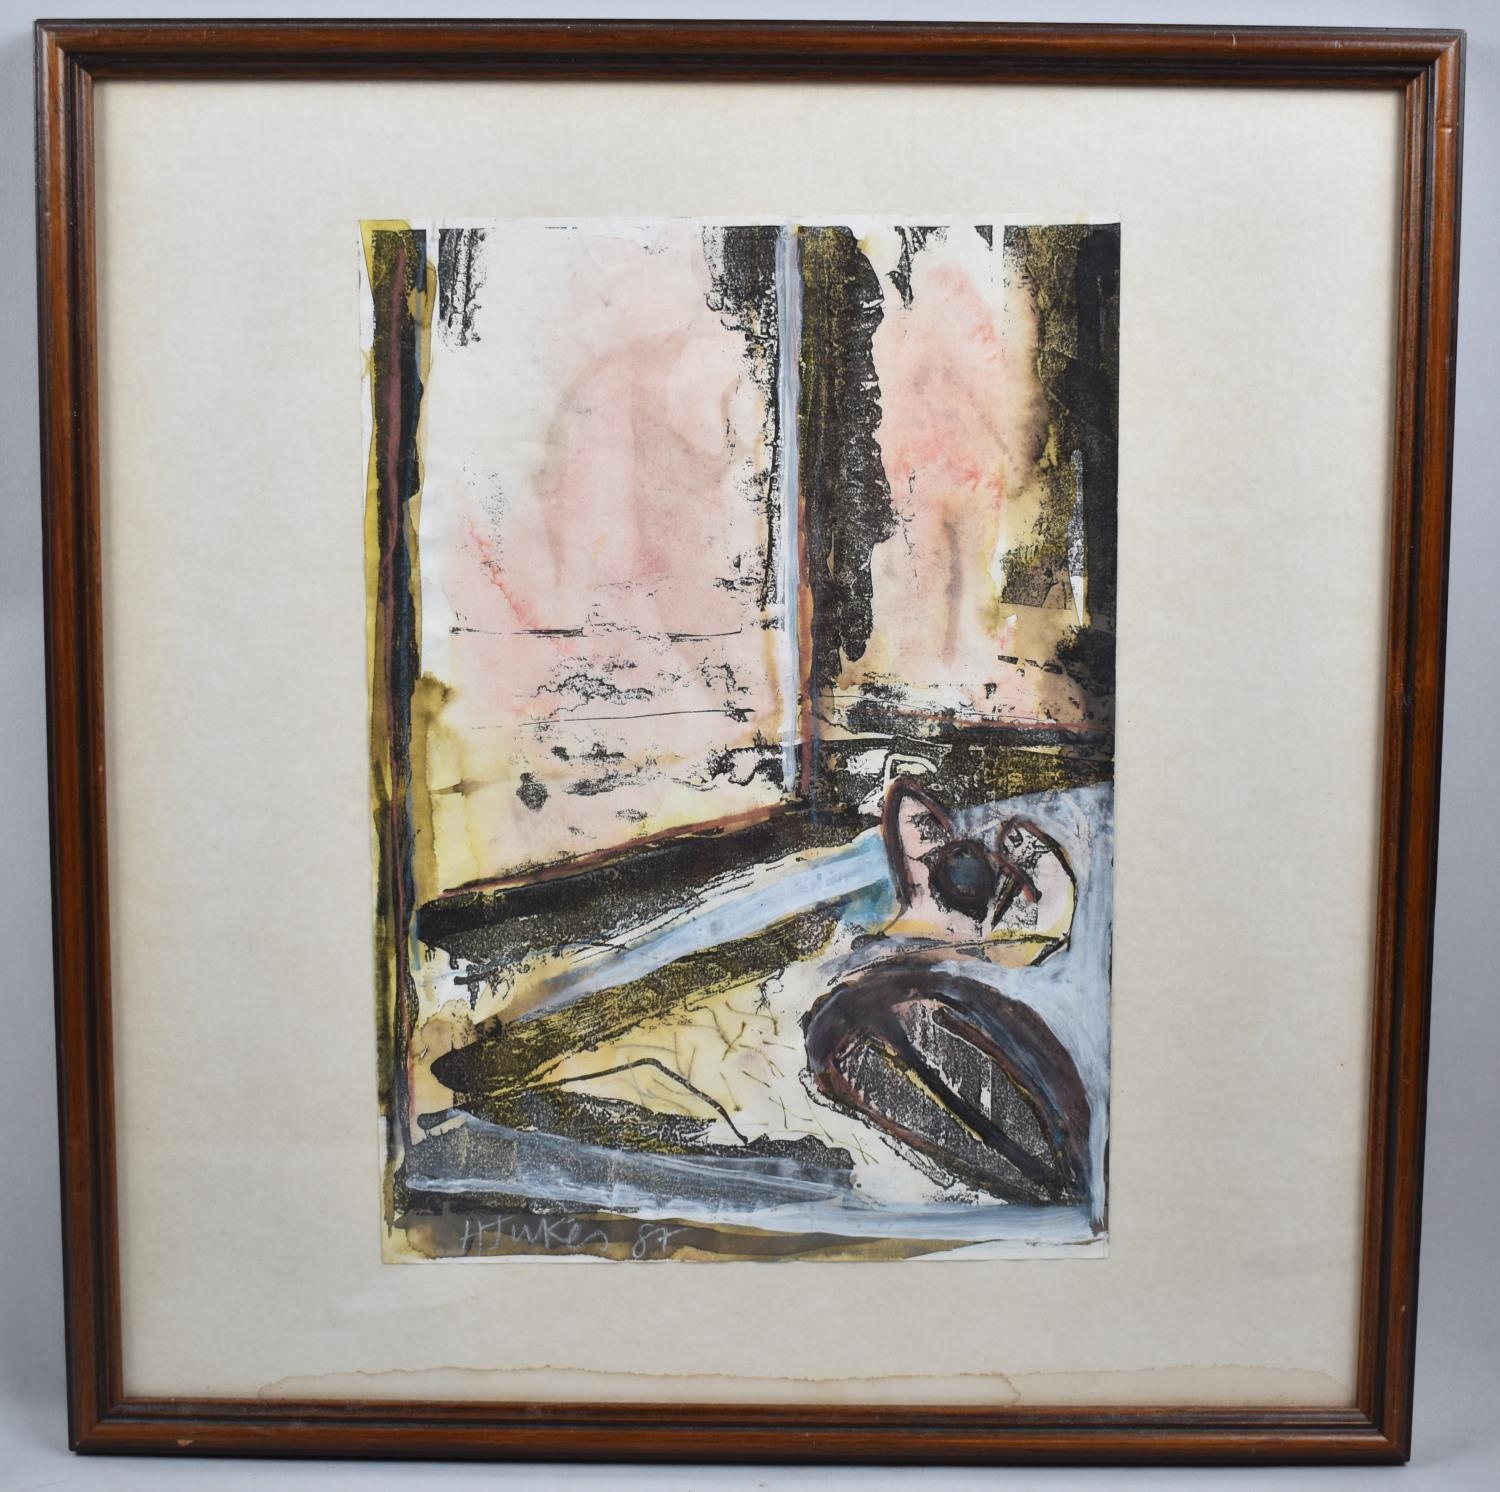 A Framed Watercolour, "Miranda at Sinclair Gardens" by H Jukes, 21x29cm